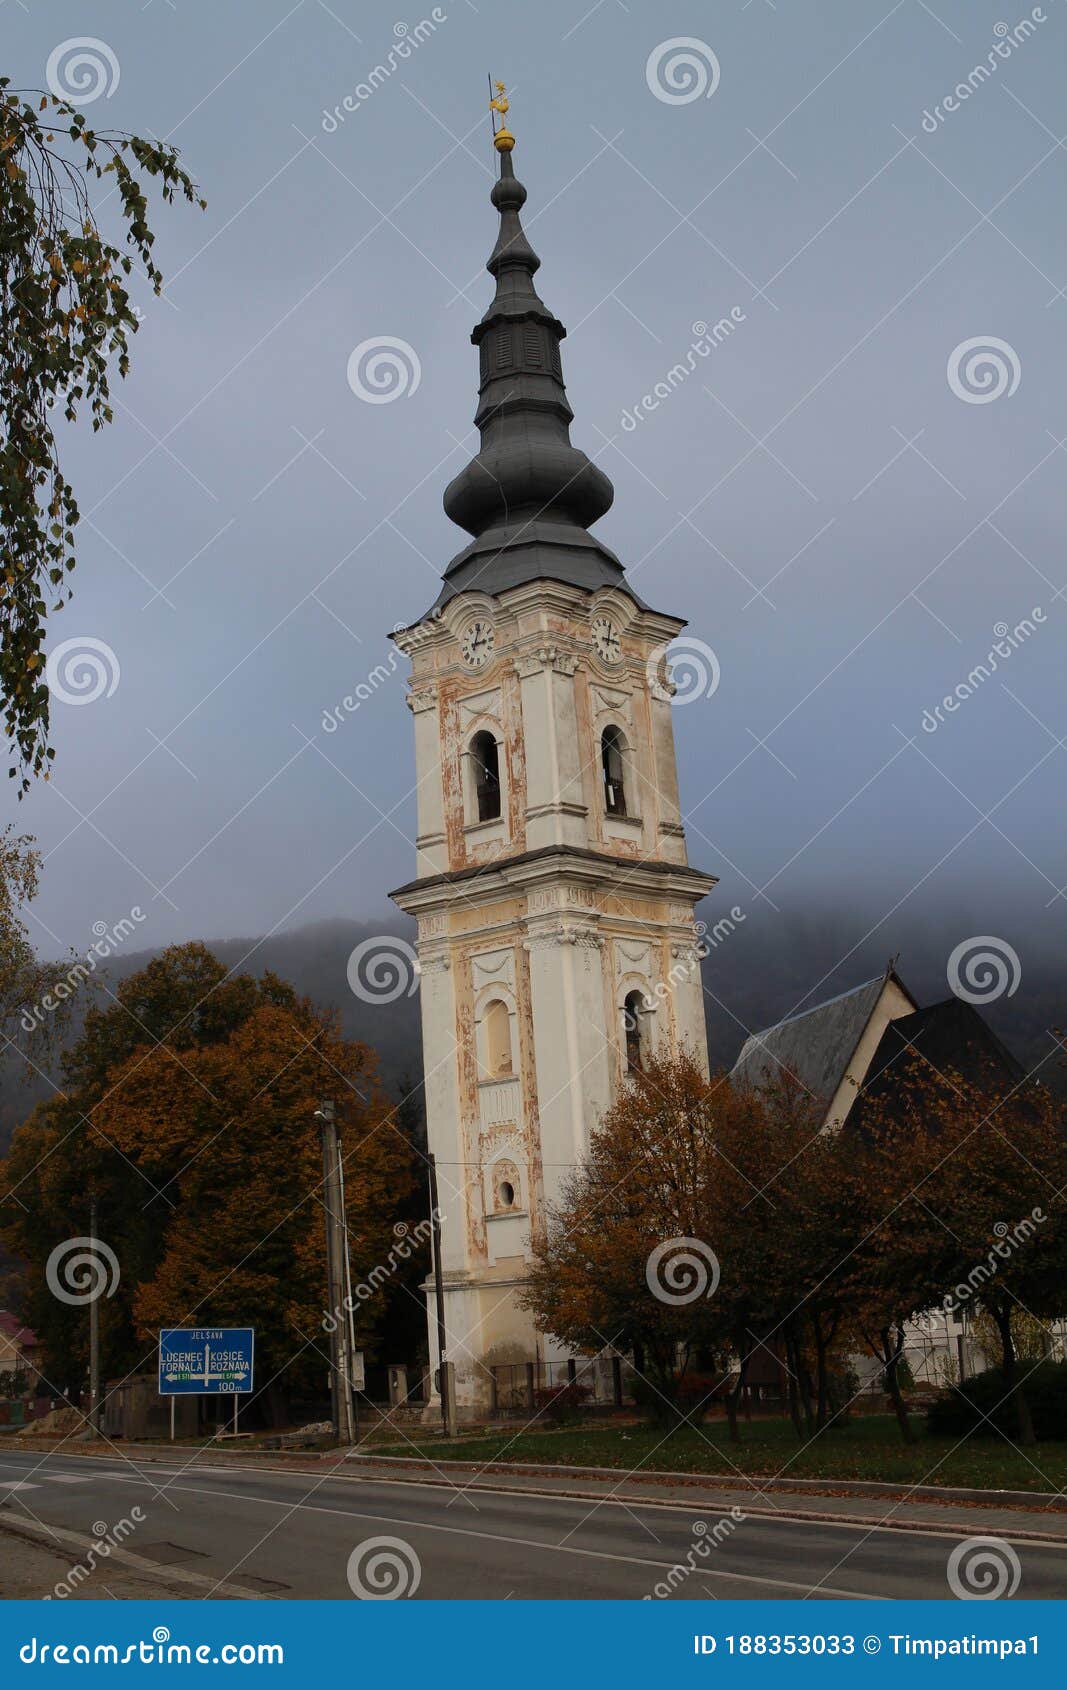 church in the main square of pleÃÂ¡ivec, slovakia